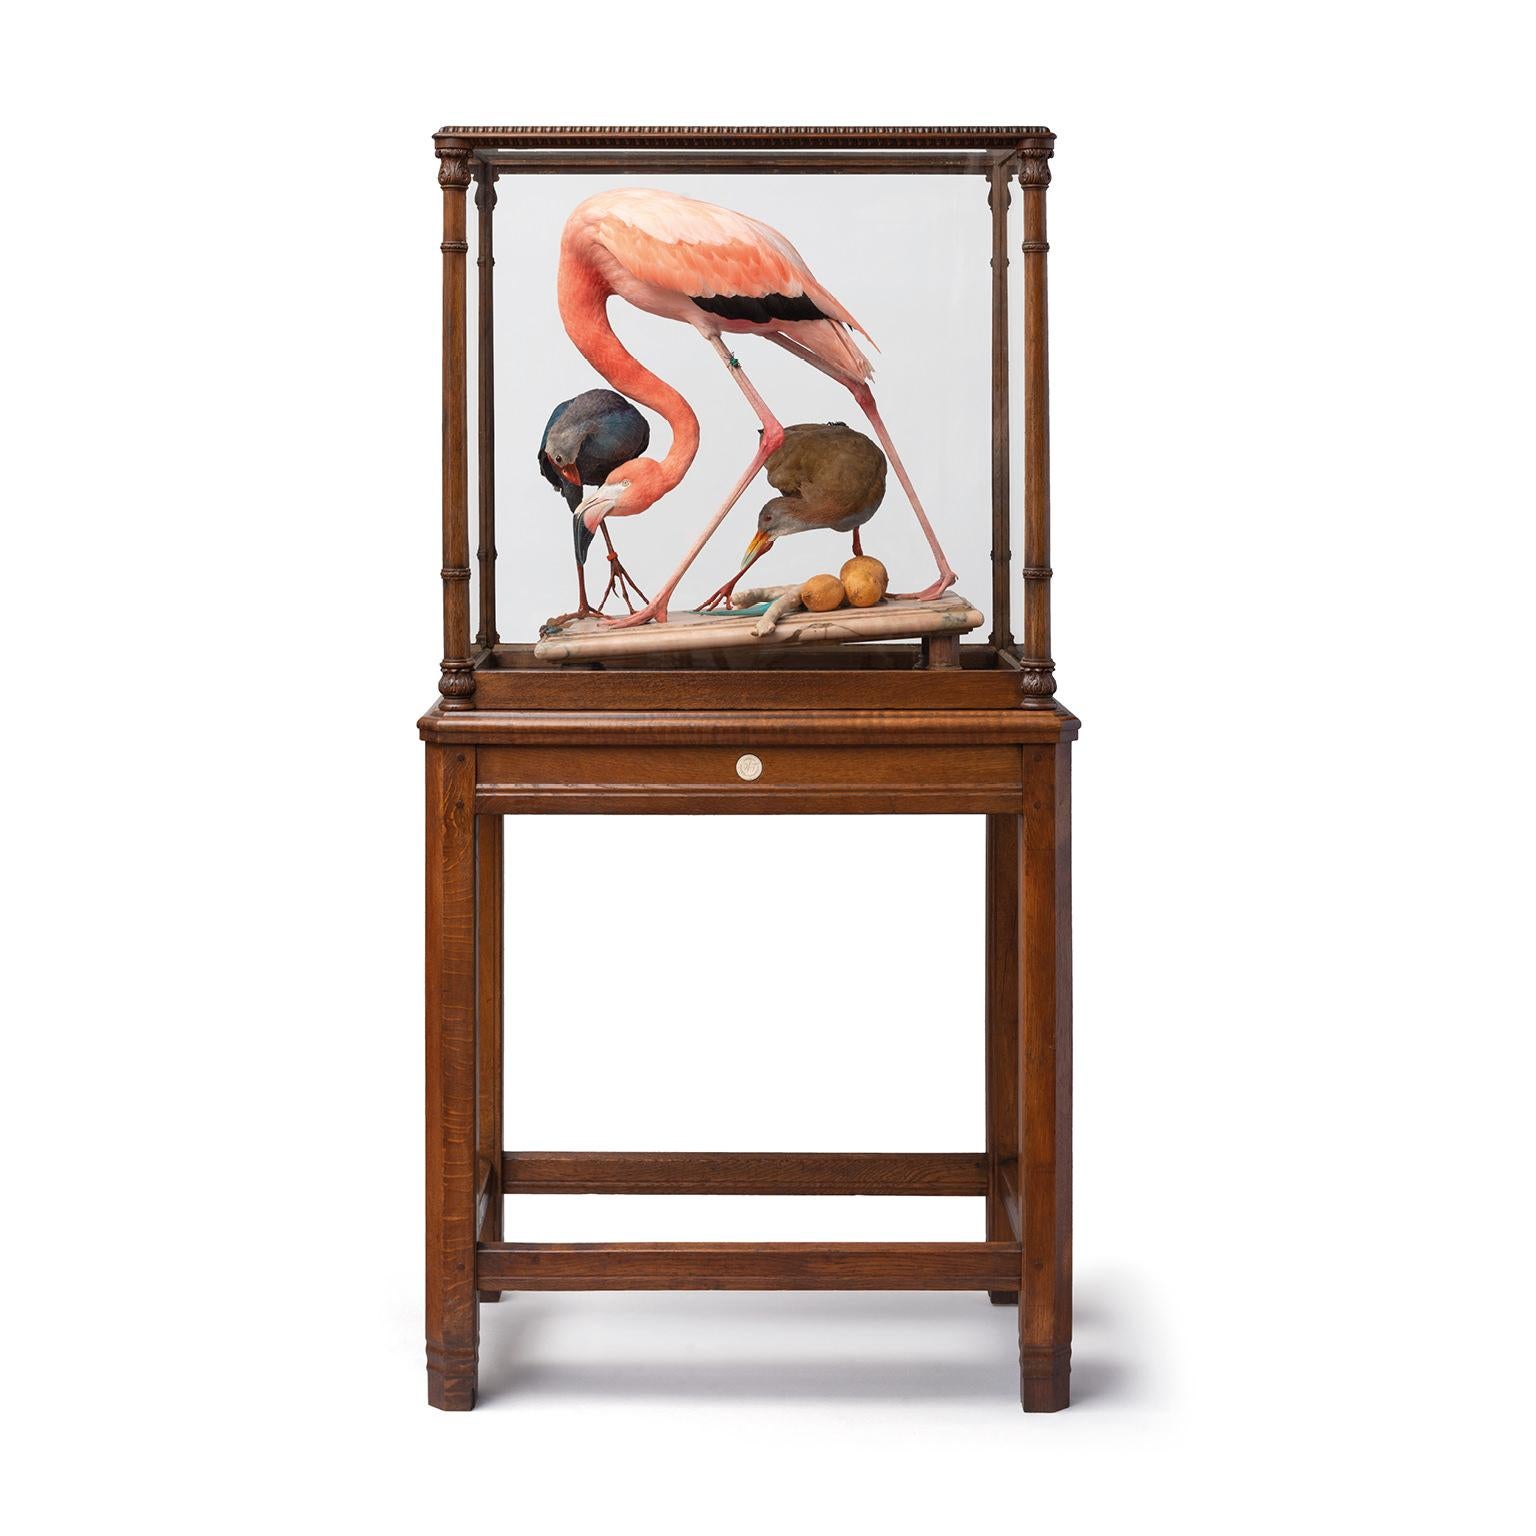 Die Haarlemer Präparatoren Jaap Sinke und Ferry van Tongeren haben Audubons ikonischen Flamingo speziell für die Ausstellung 